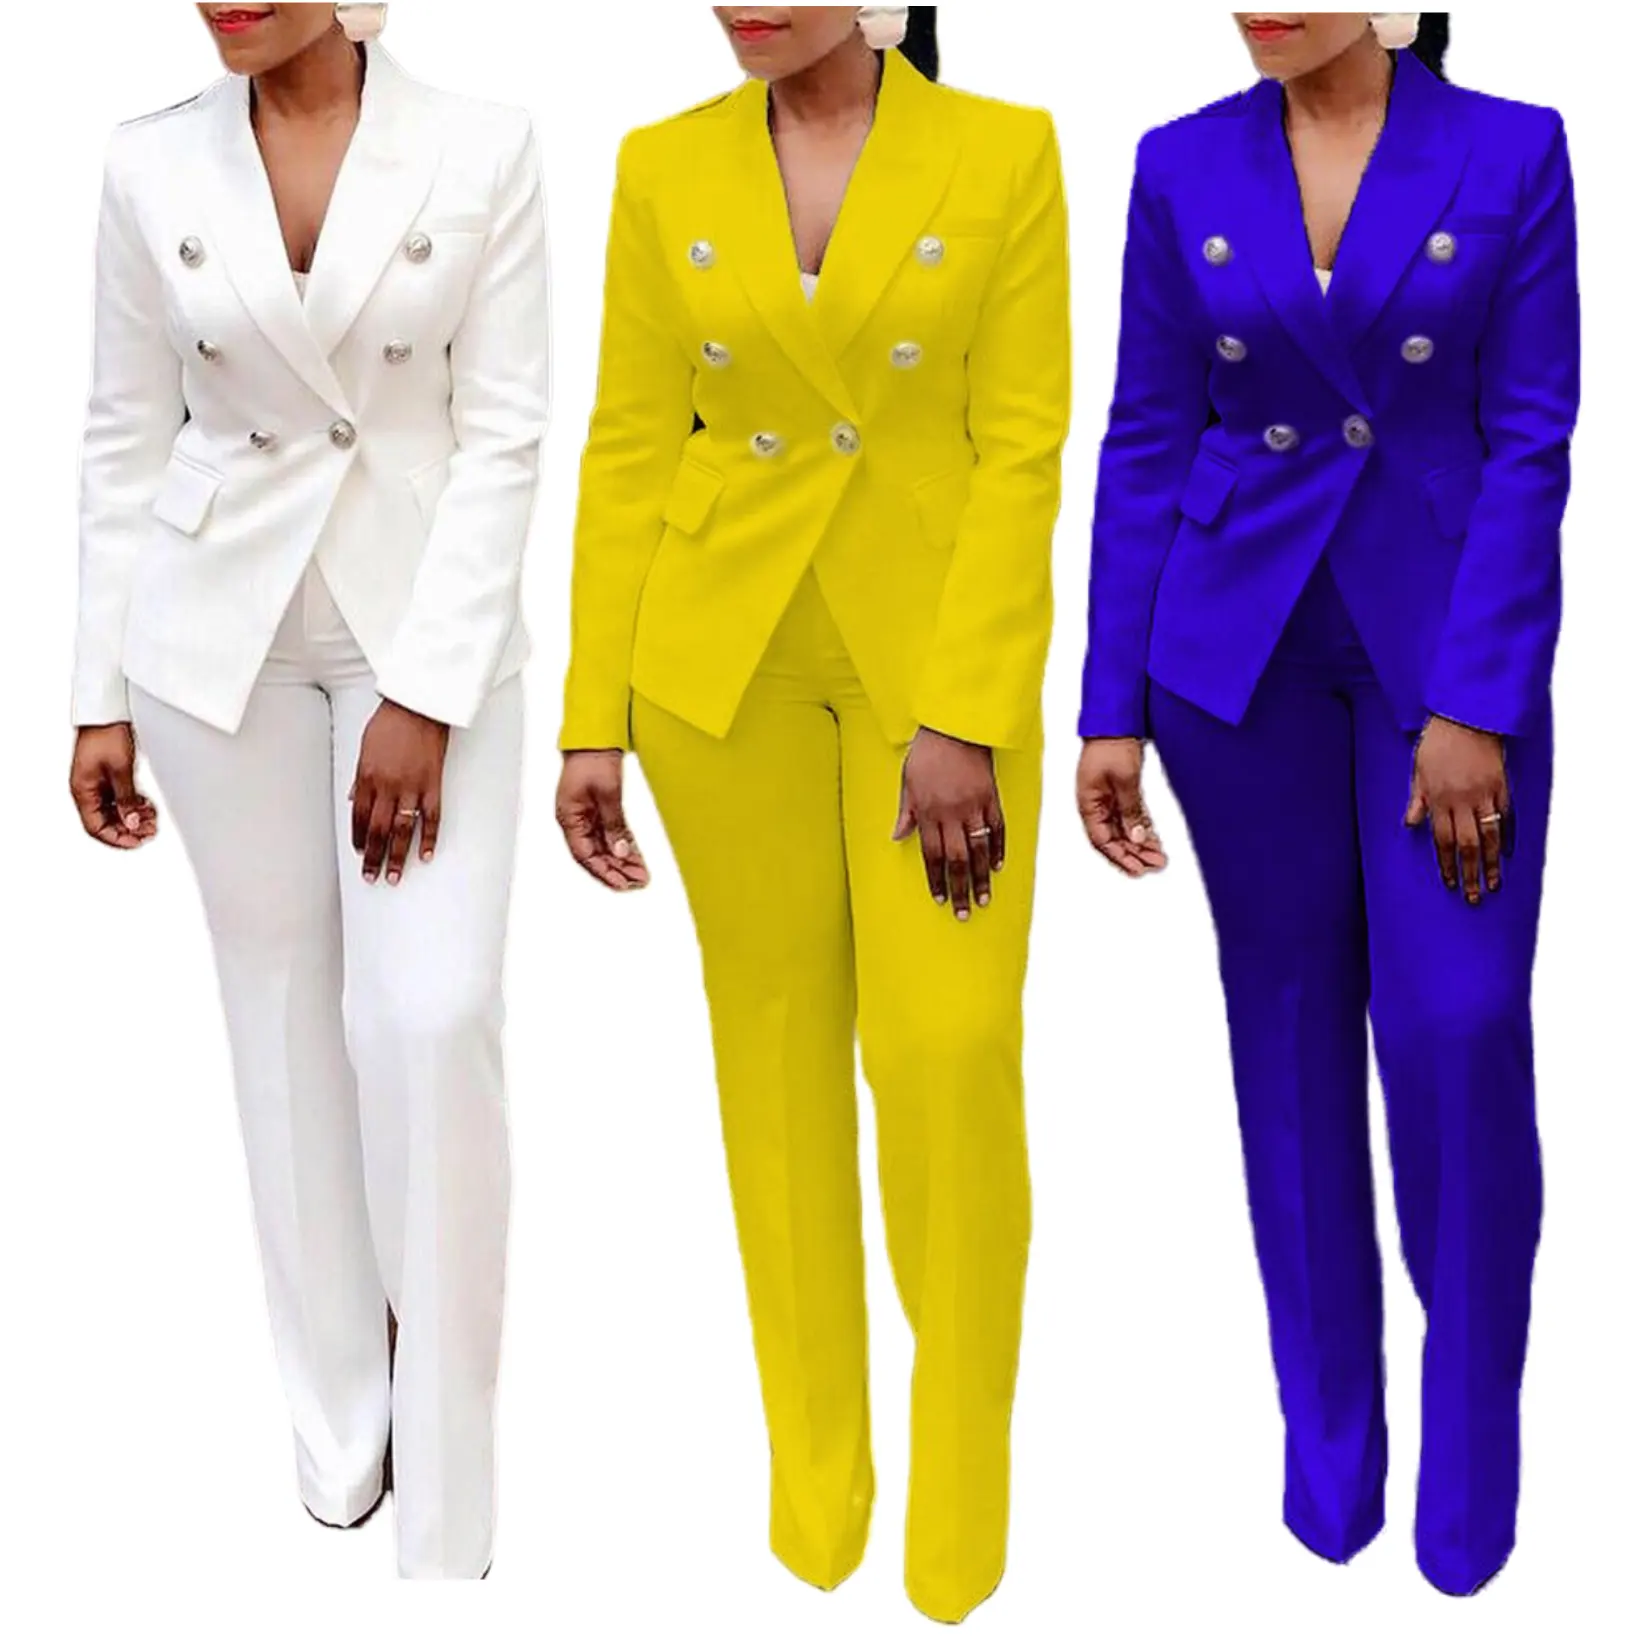 X6035 חדש עזיבות גבירותיי אלגנטי מוצק צבע חליפות סט לנשים בלייזר ומכנסיים סט עסקי לנשים